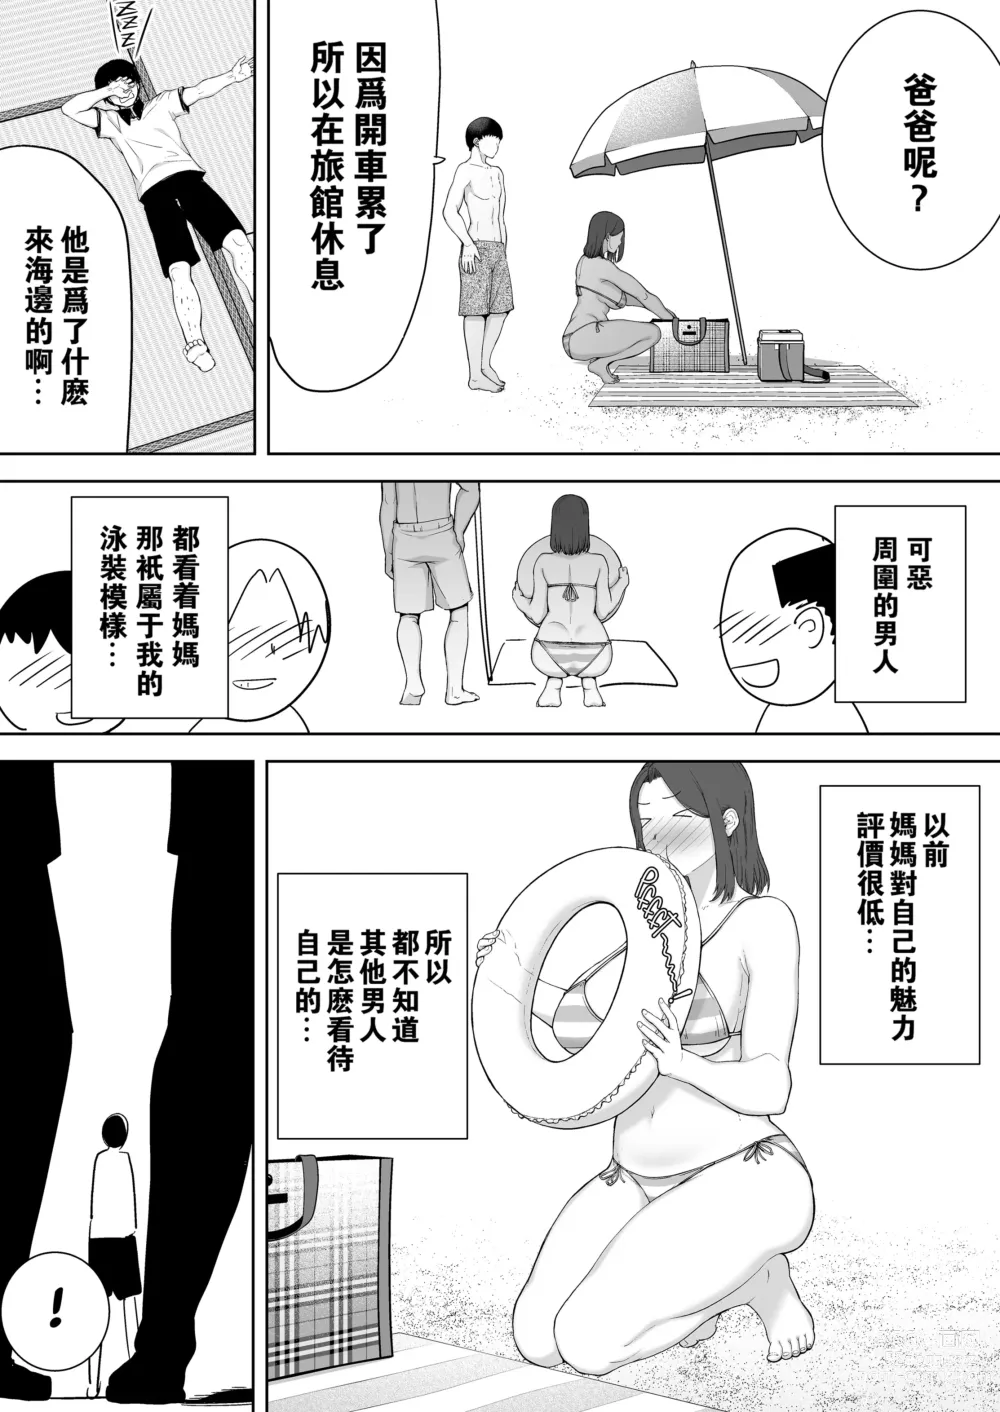 Page 14 of doujinshi 母印堂3